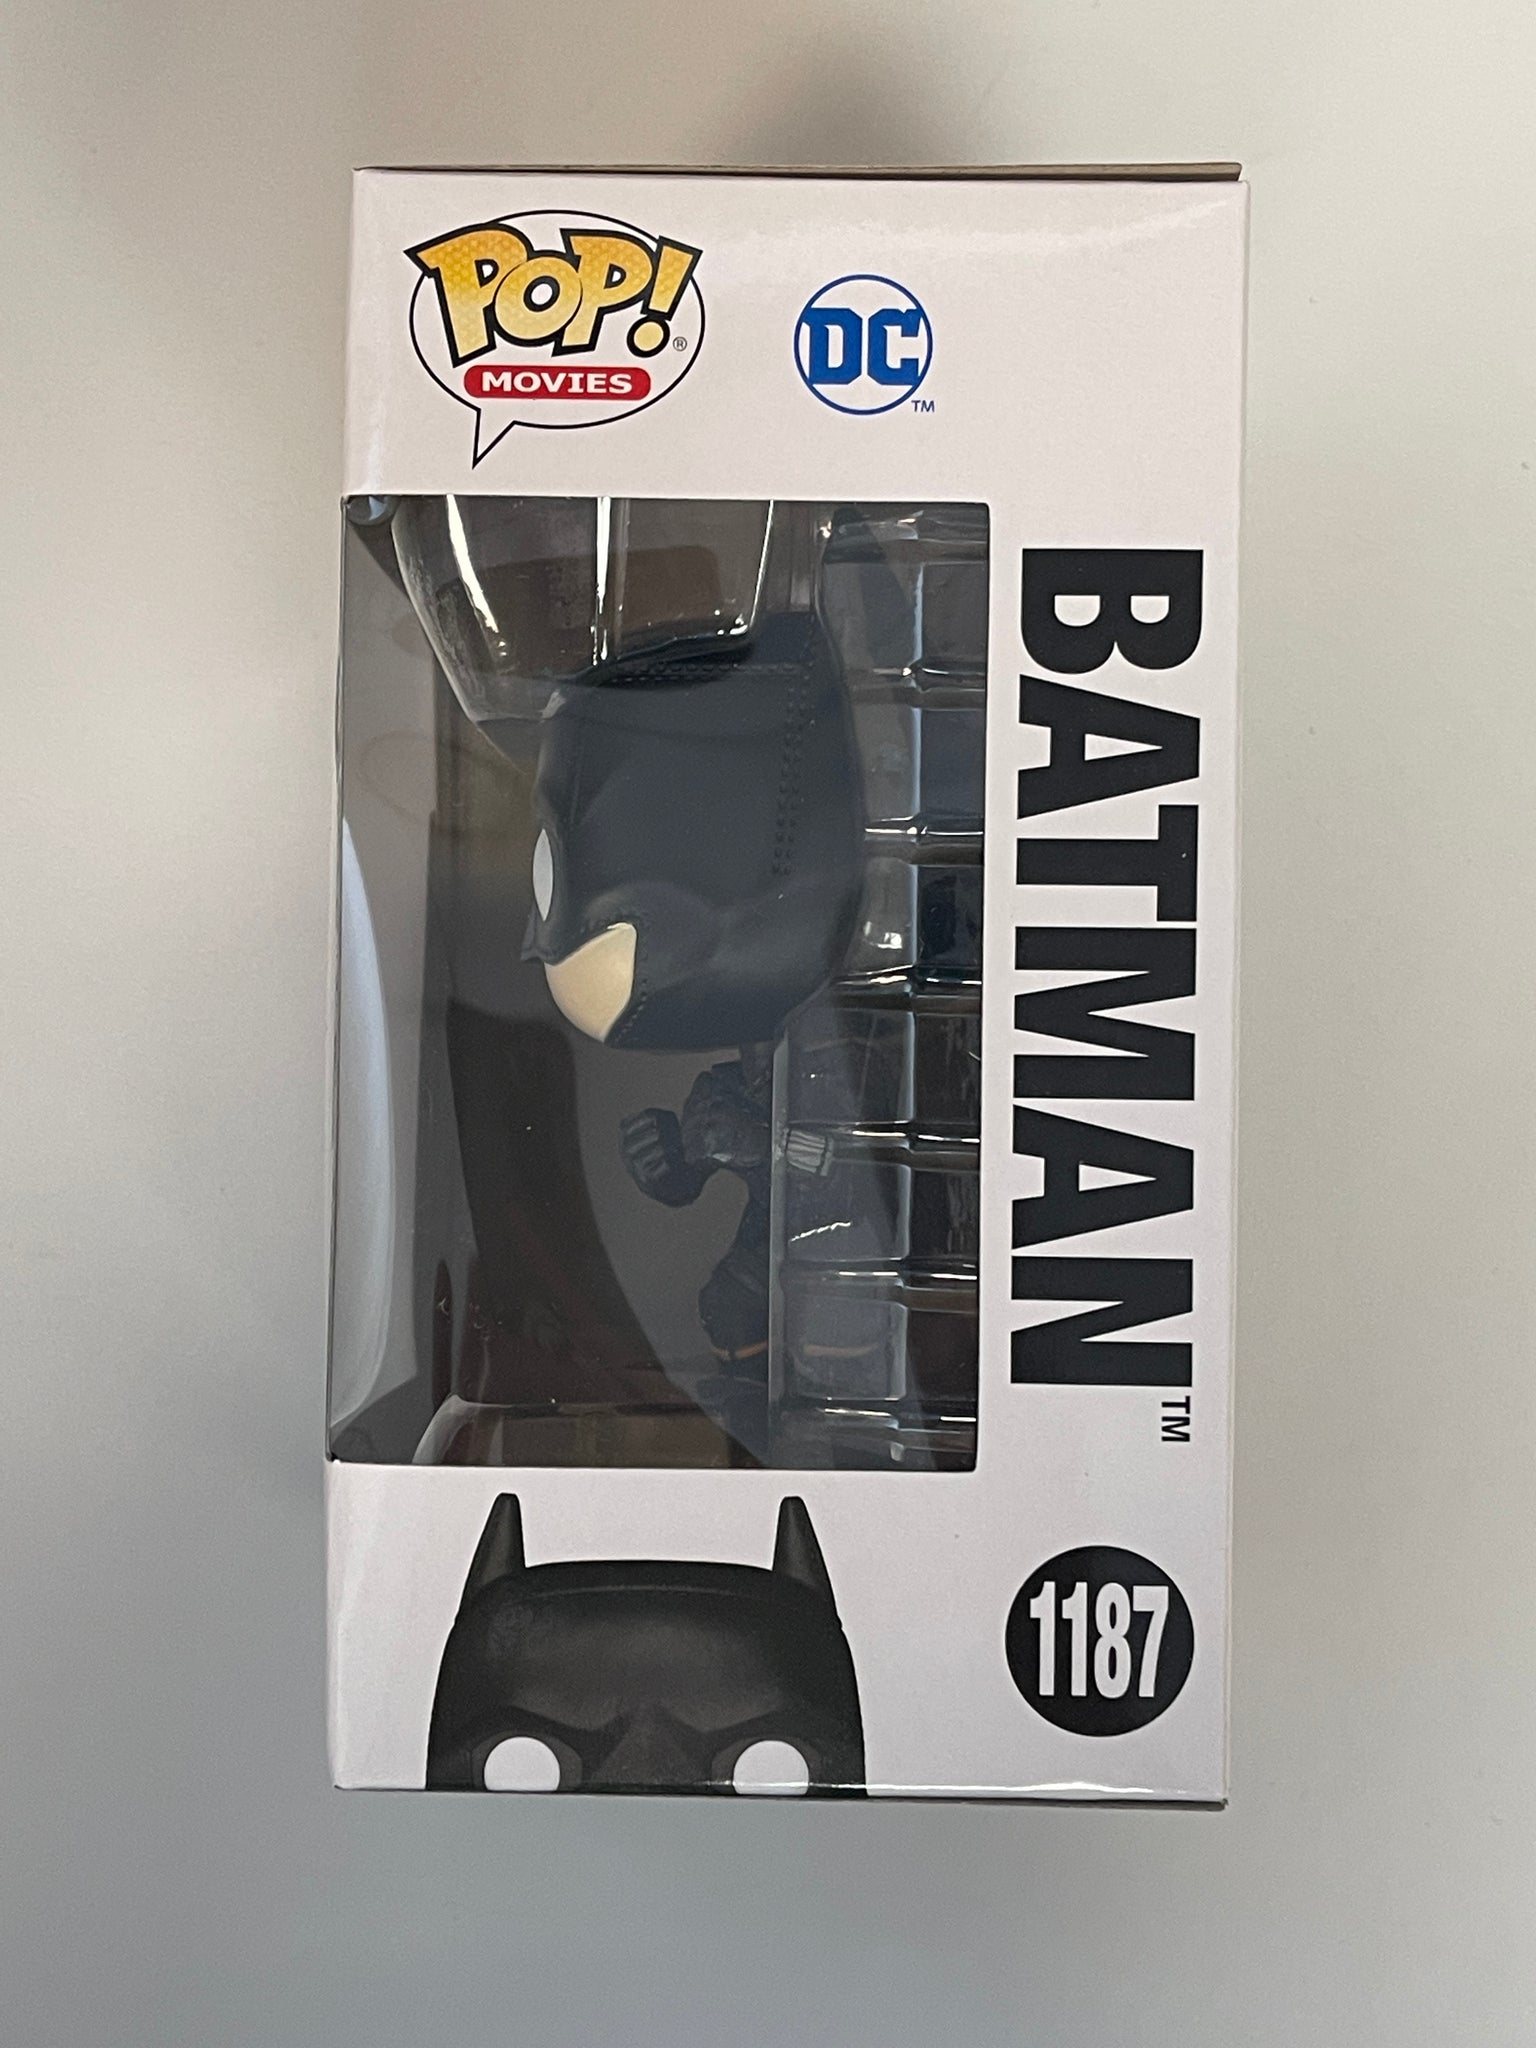 Funko POP Batman 1187 DC Cómics